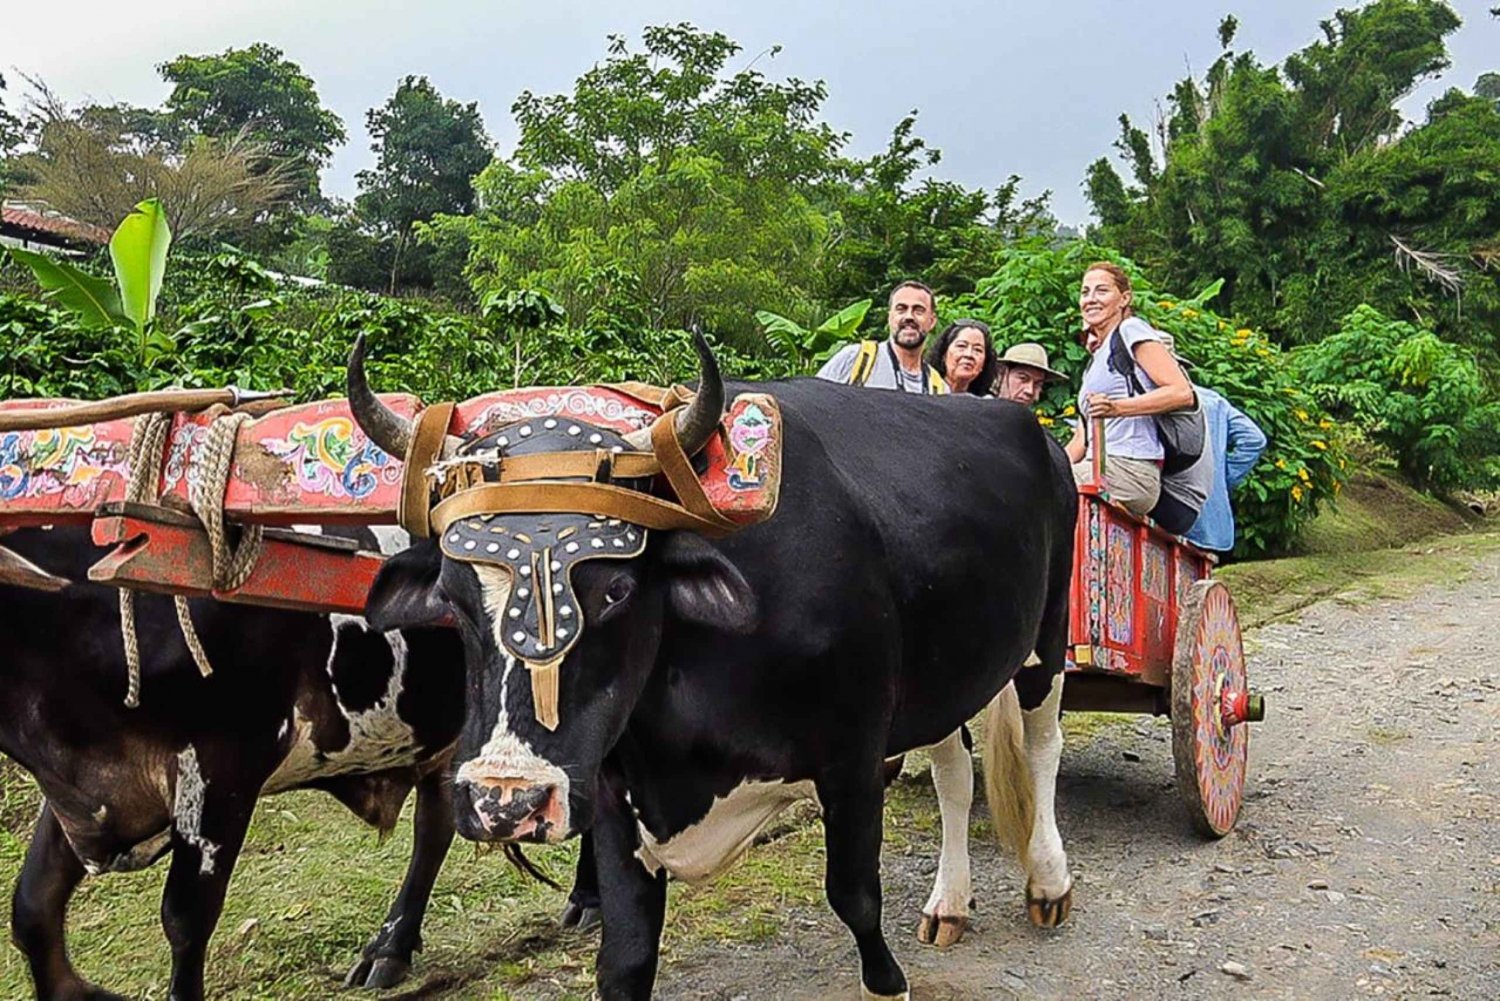 Monteverde: Tagesausflug zu Kaffee, Schokolade und Zuckerrohr